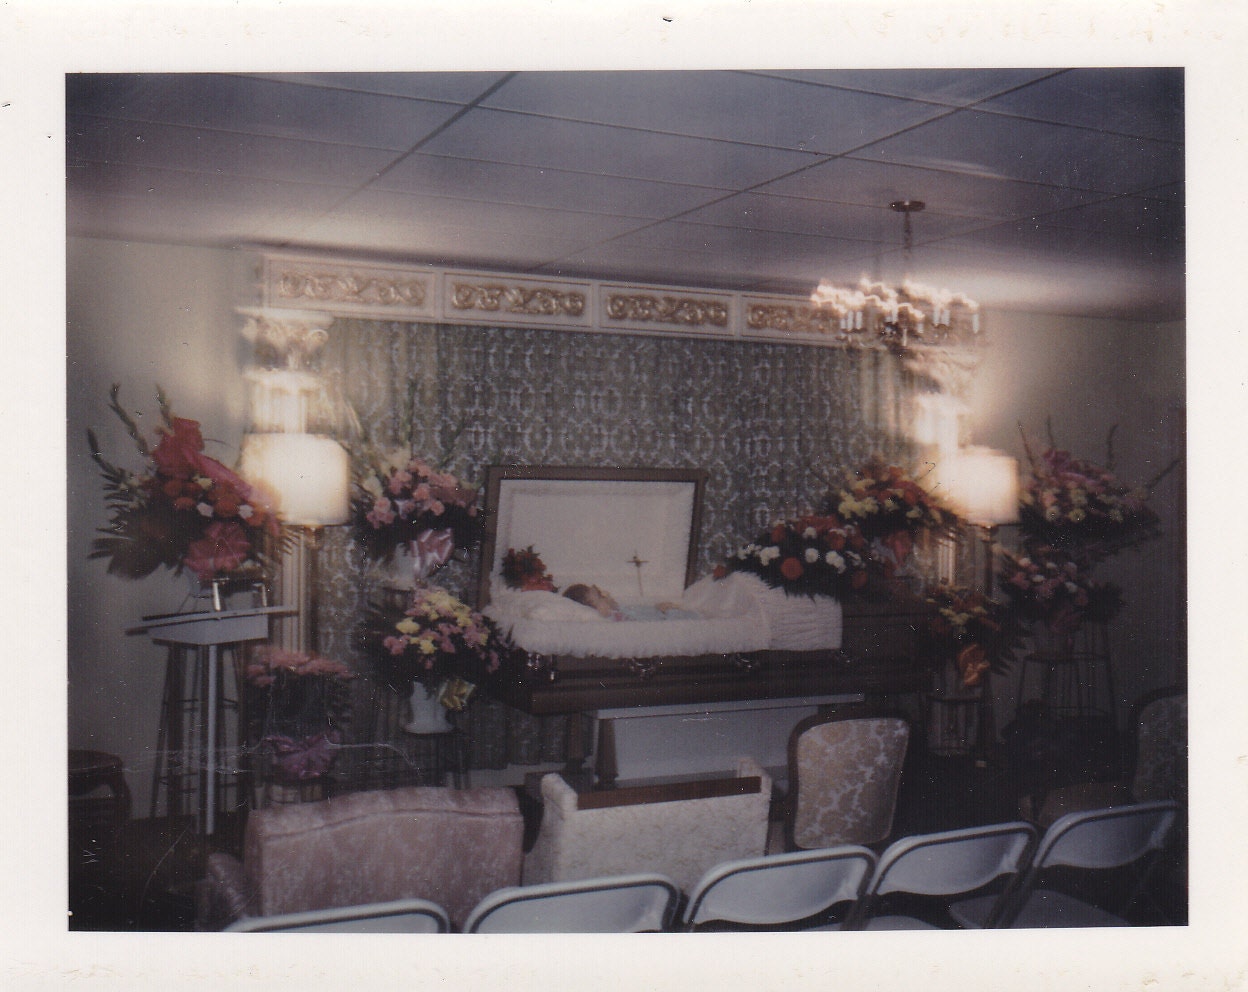 Open Casket Funeral- SET of 2- Eerie Color Polaroids- 1970s Vintage Photographs - EphemeraObscura